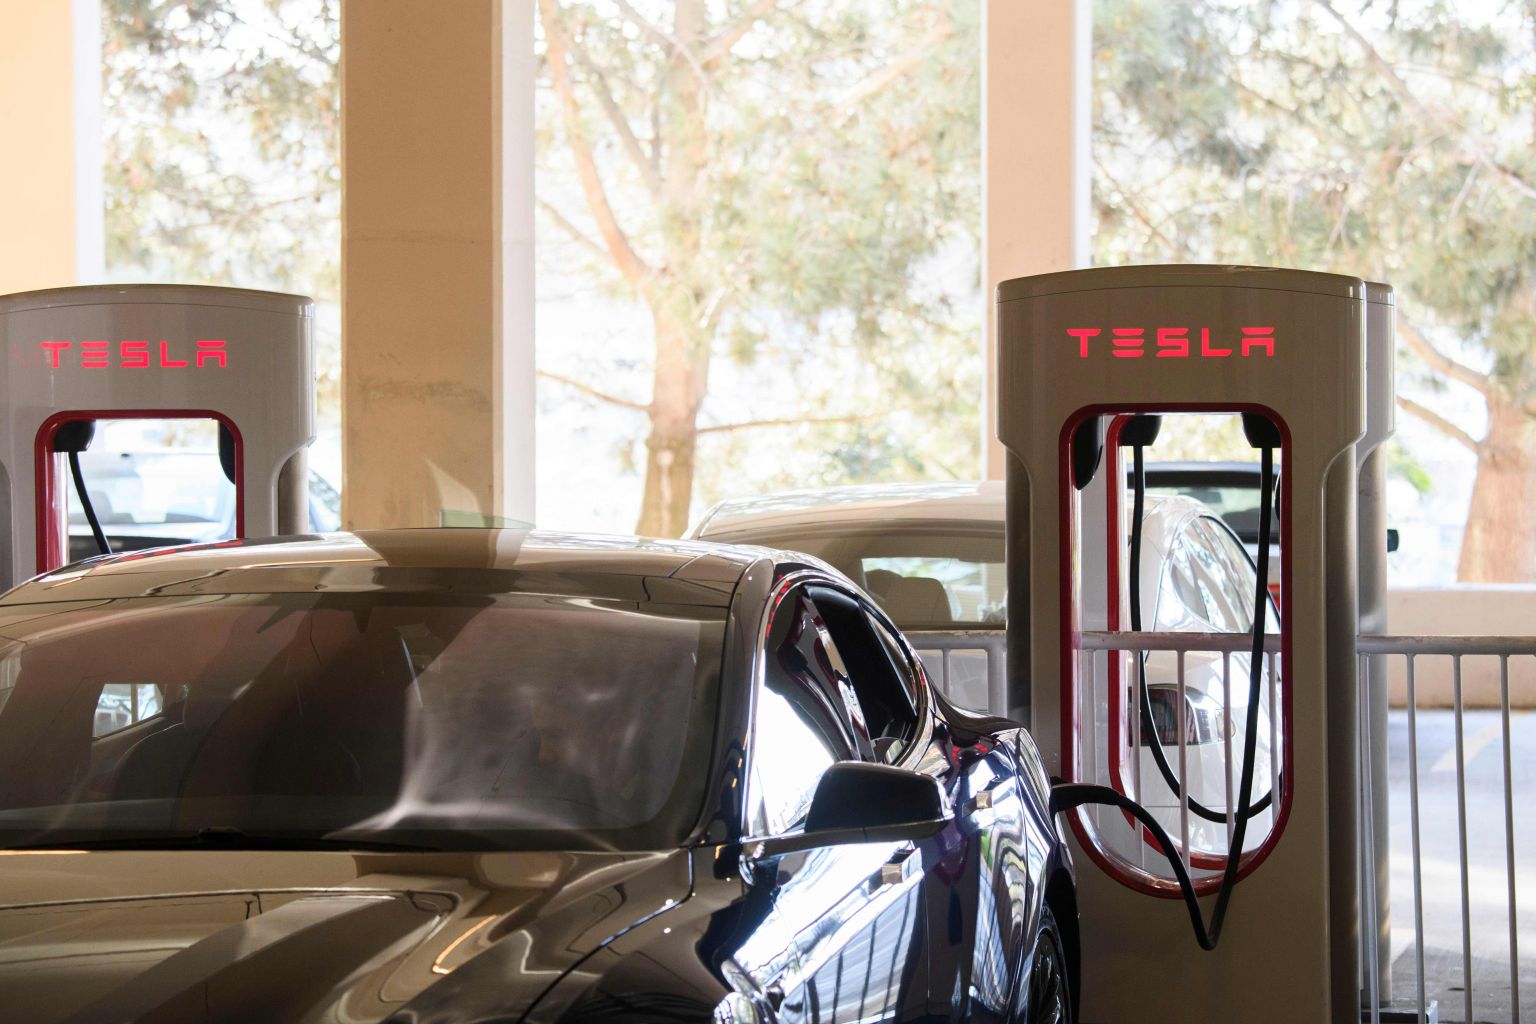 Tesla zet 3 EV-oplaadpunten op in S'pore's Orchard, om de komende maanden meer punten toe te voegen